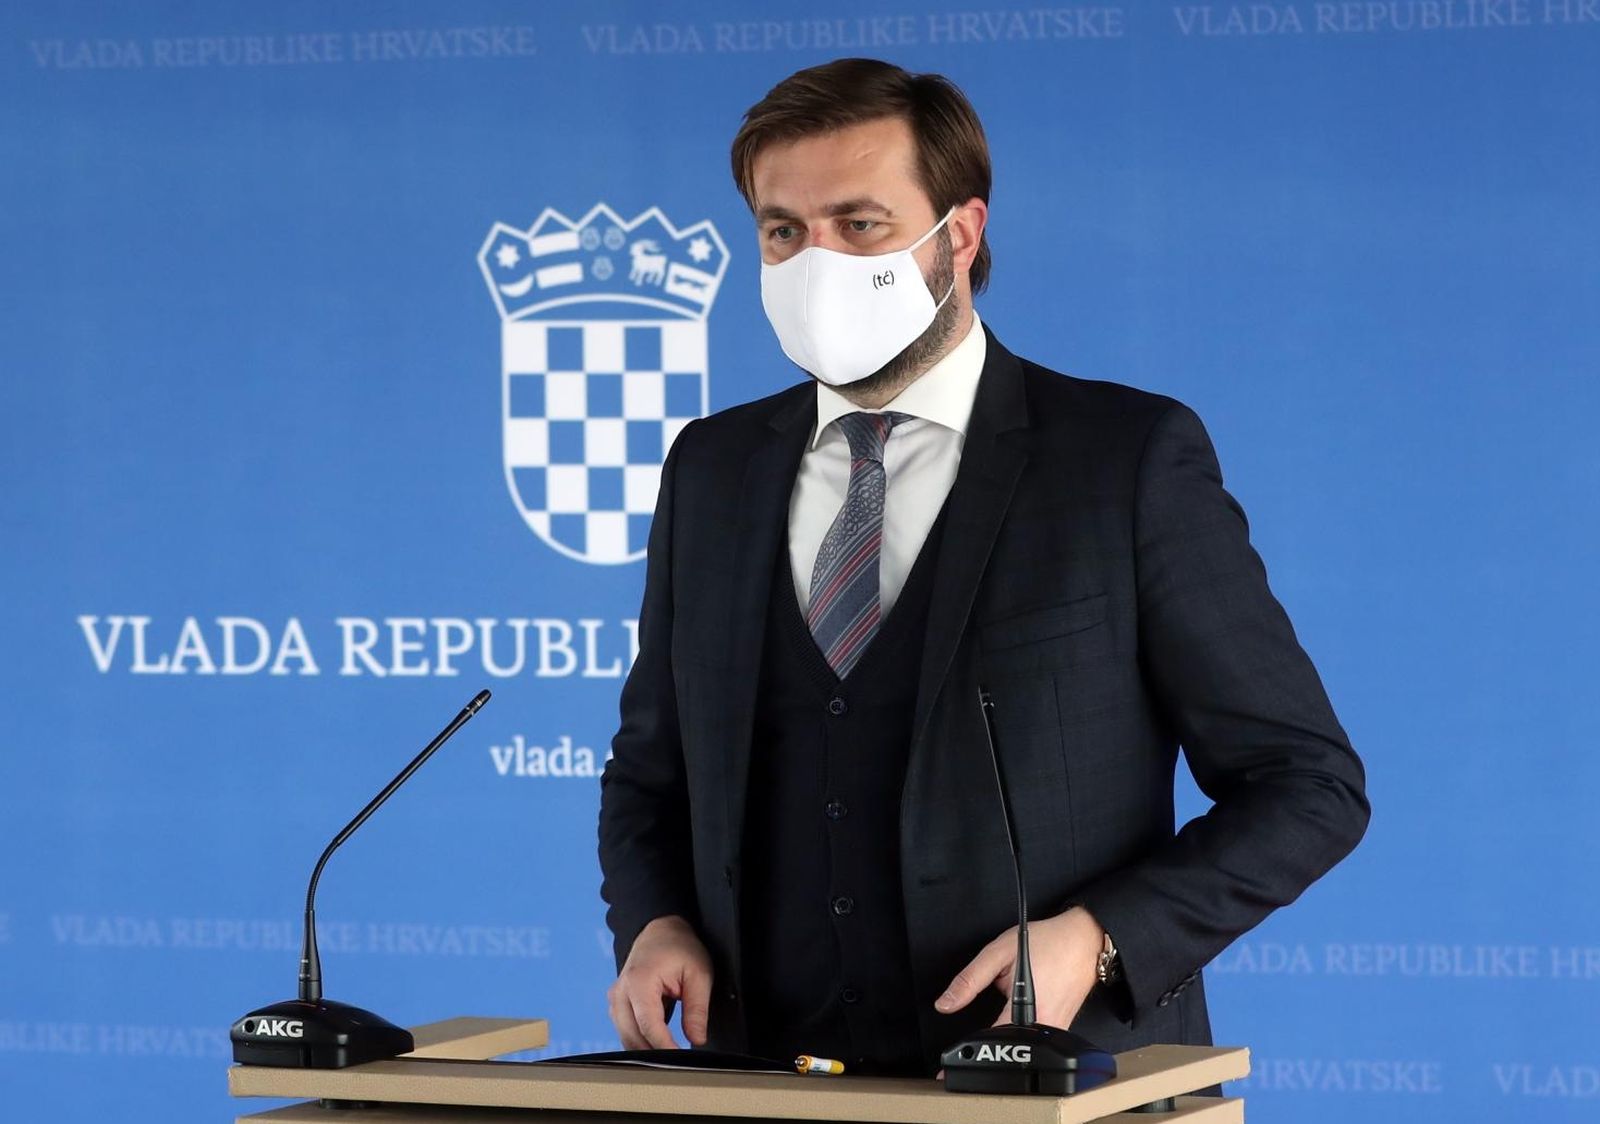 28.01.2021., Zagreb - Ministar Tomislav Coric iskoristio konferenciju za medije  i zastitnu masku da reklamira svoj Twitter. Photo: Zeljko Lukunic/PIXSELL